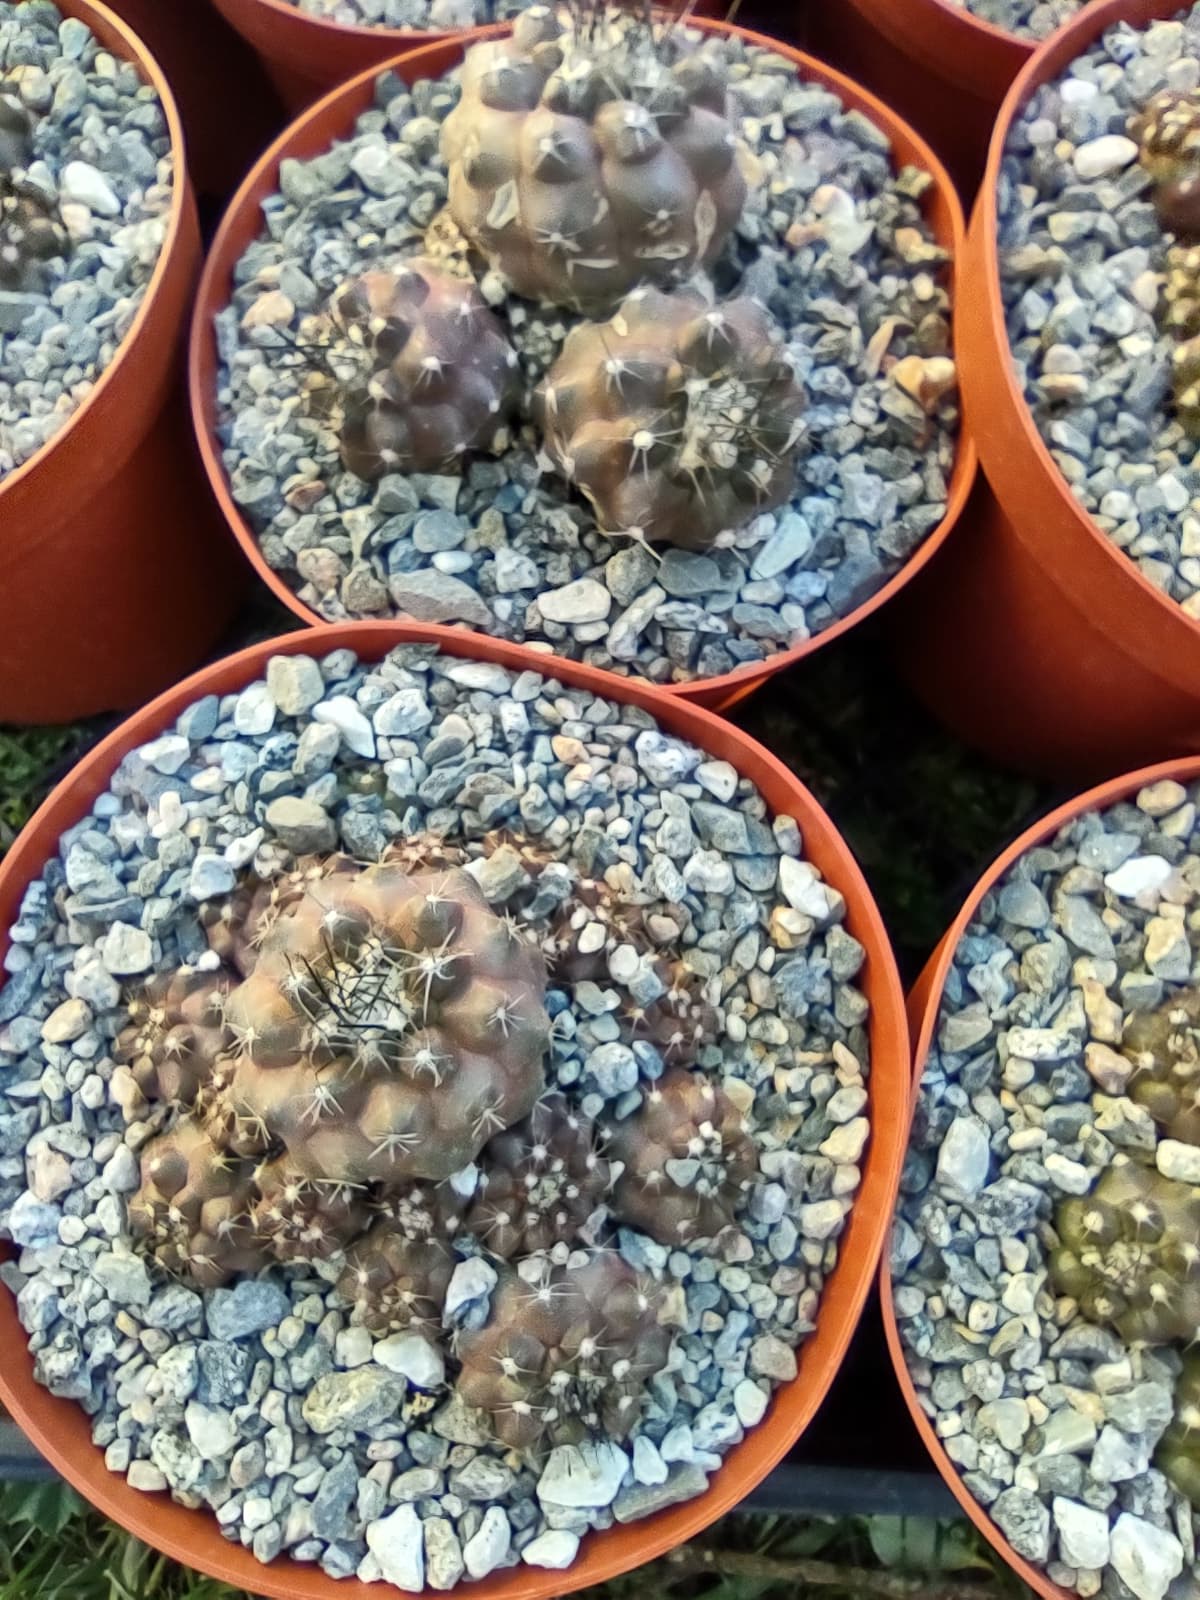 Copiapoa humilis in 6 Inch Pot Live Cactus